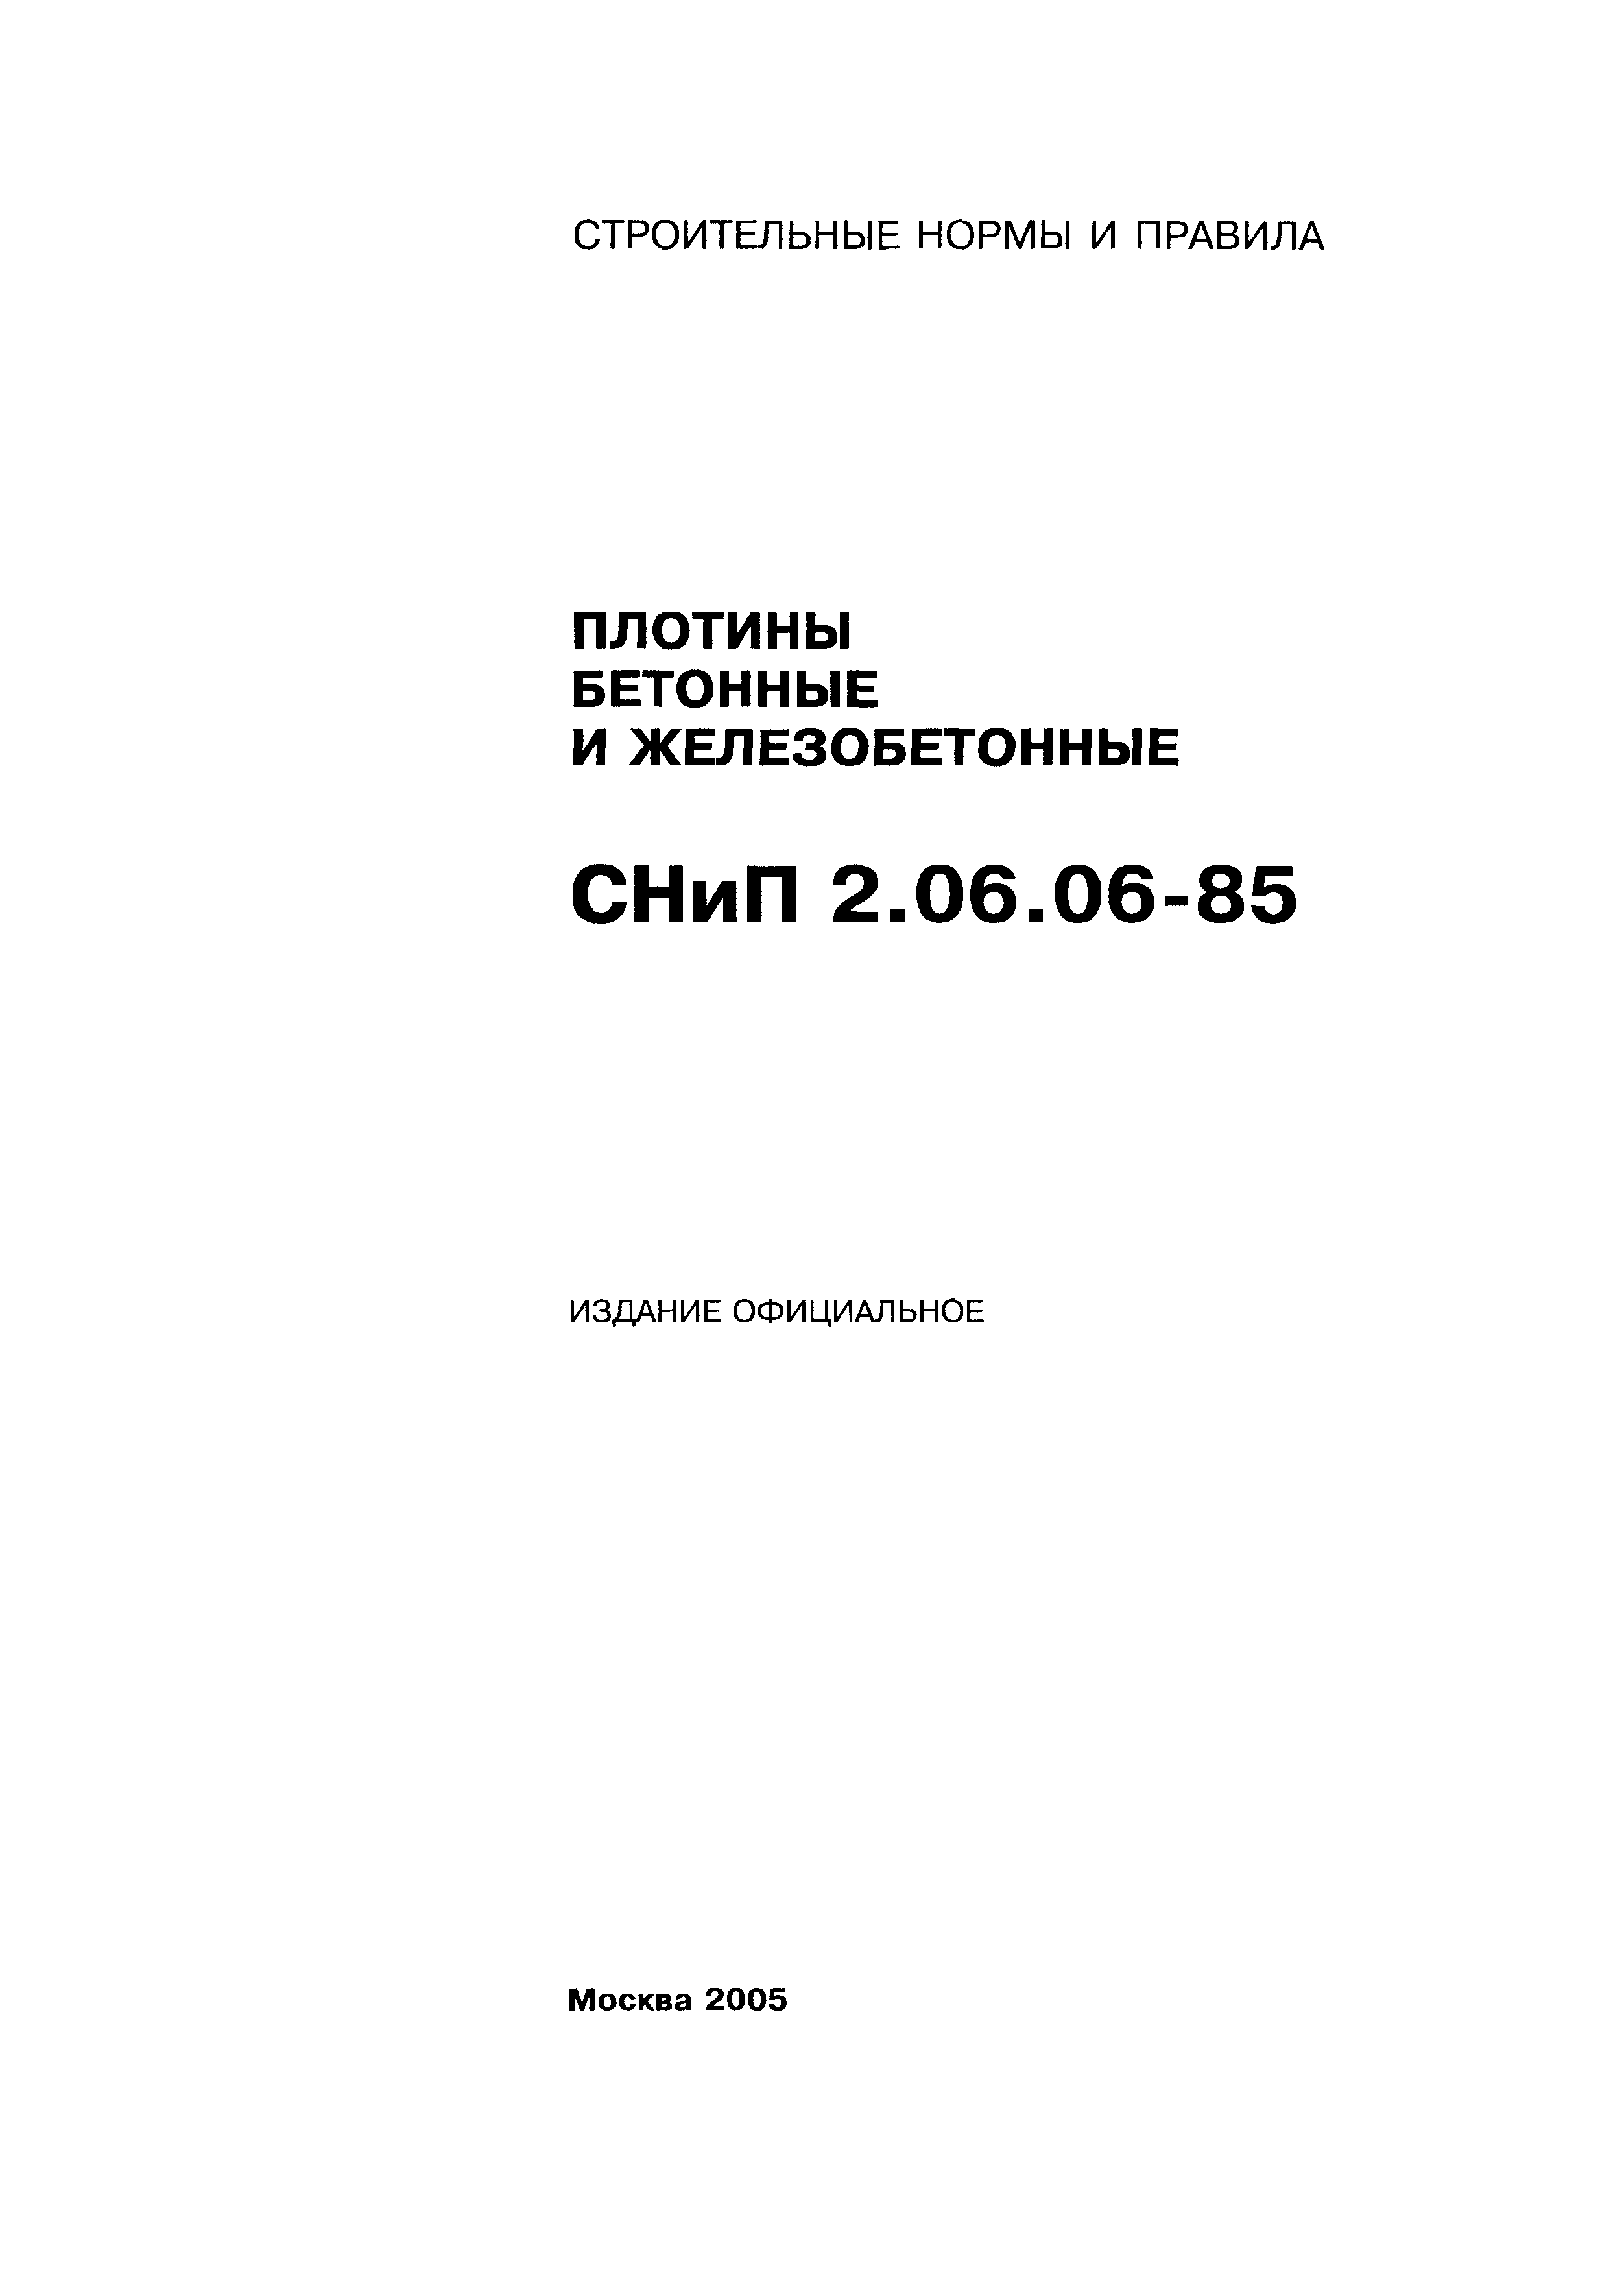 СНиП 2.06.06-85